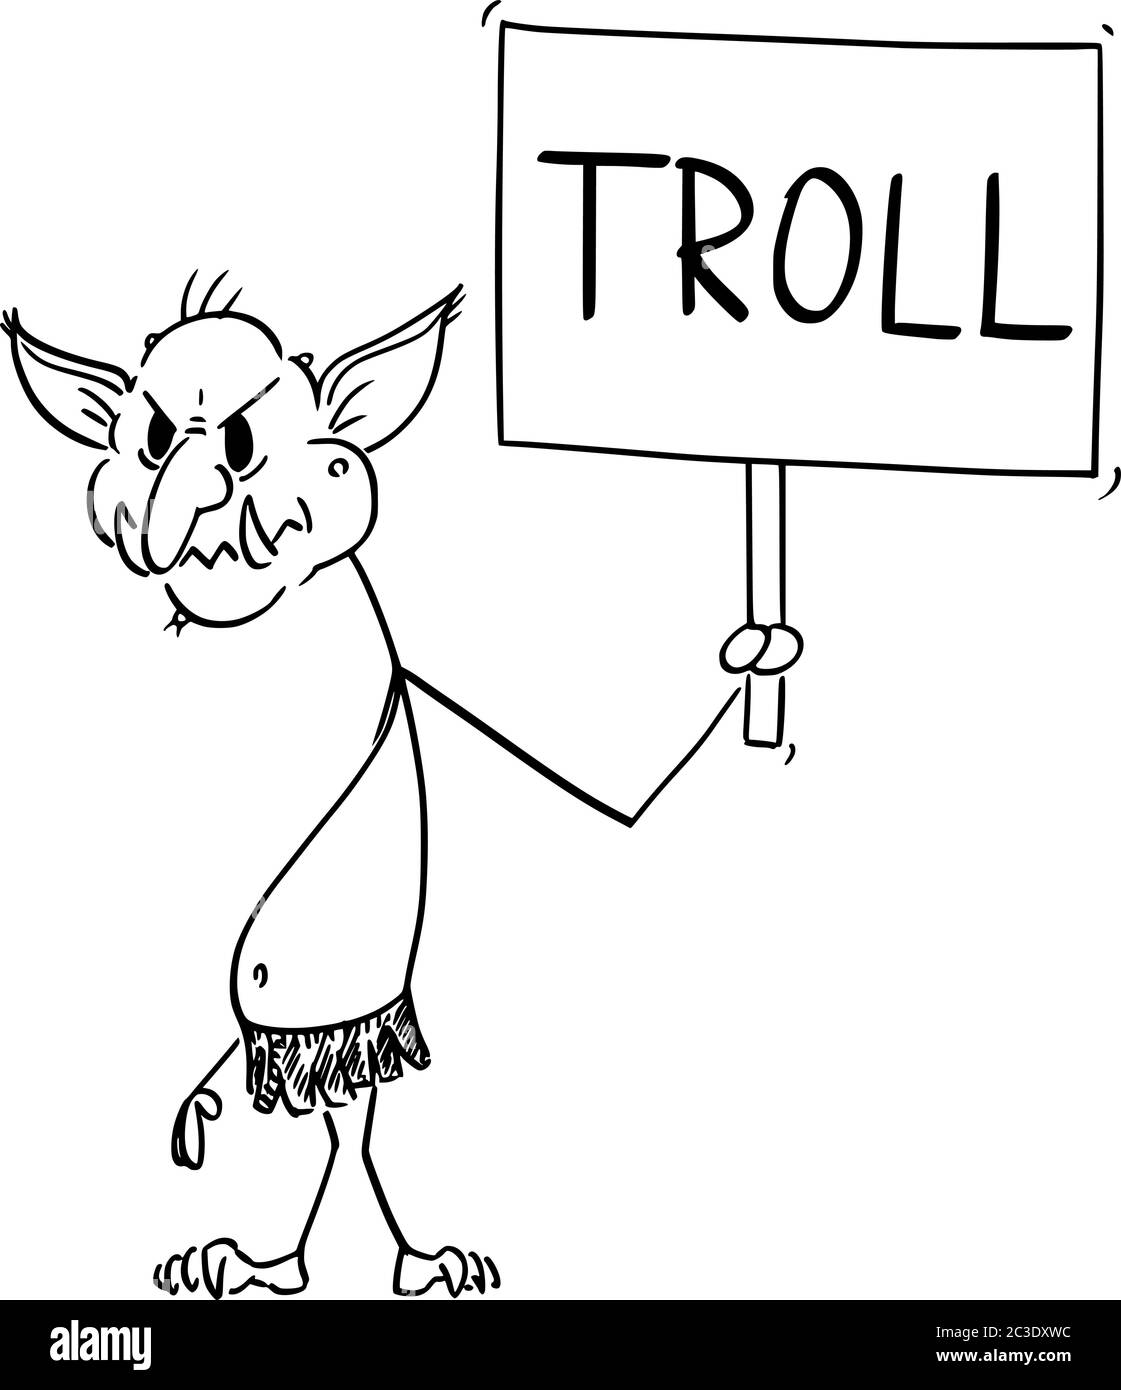 Vector Cartoon Stick figura dibujo conceptual ilustración de troll virtual de Internet asaltar a otros usuarios en línea en las guerras de llama sosteniendo signo. Ilustración del Vector